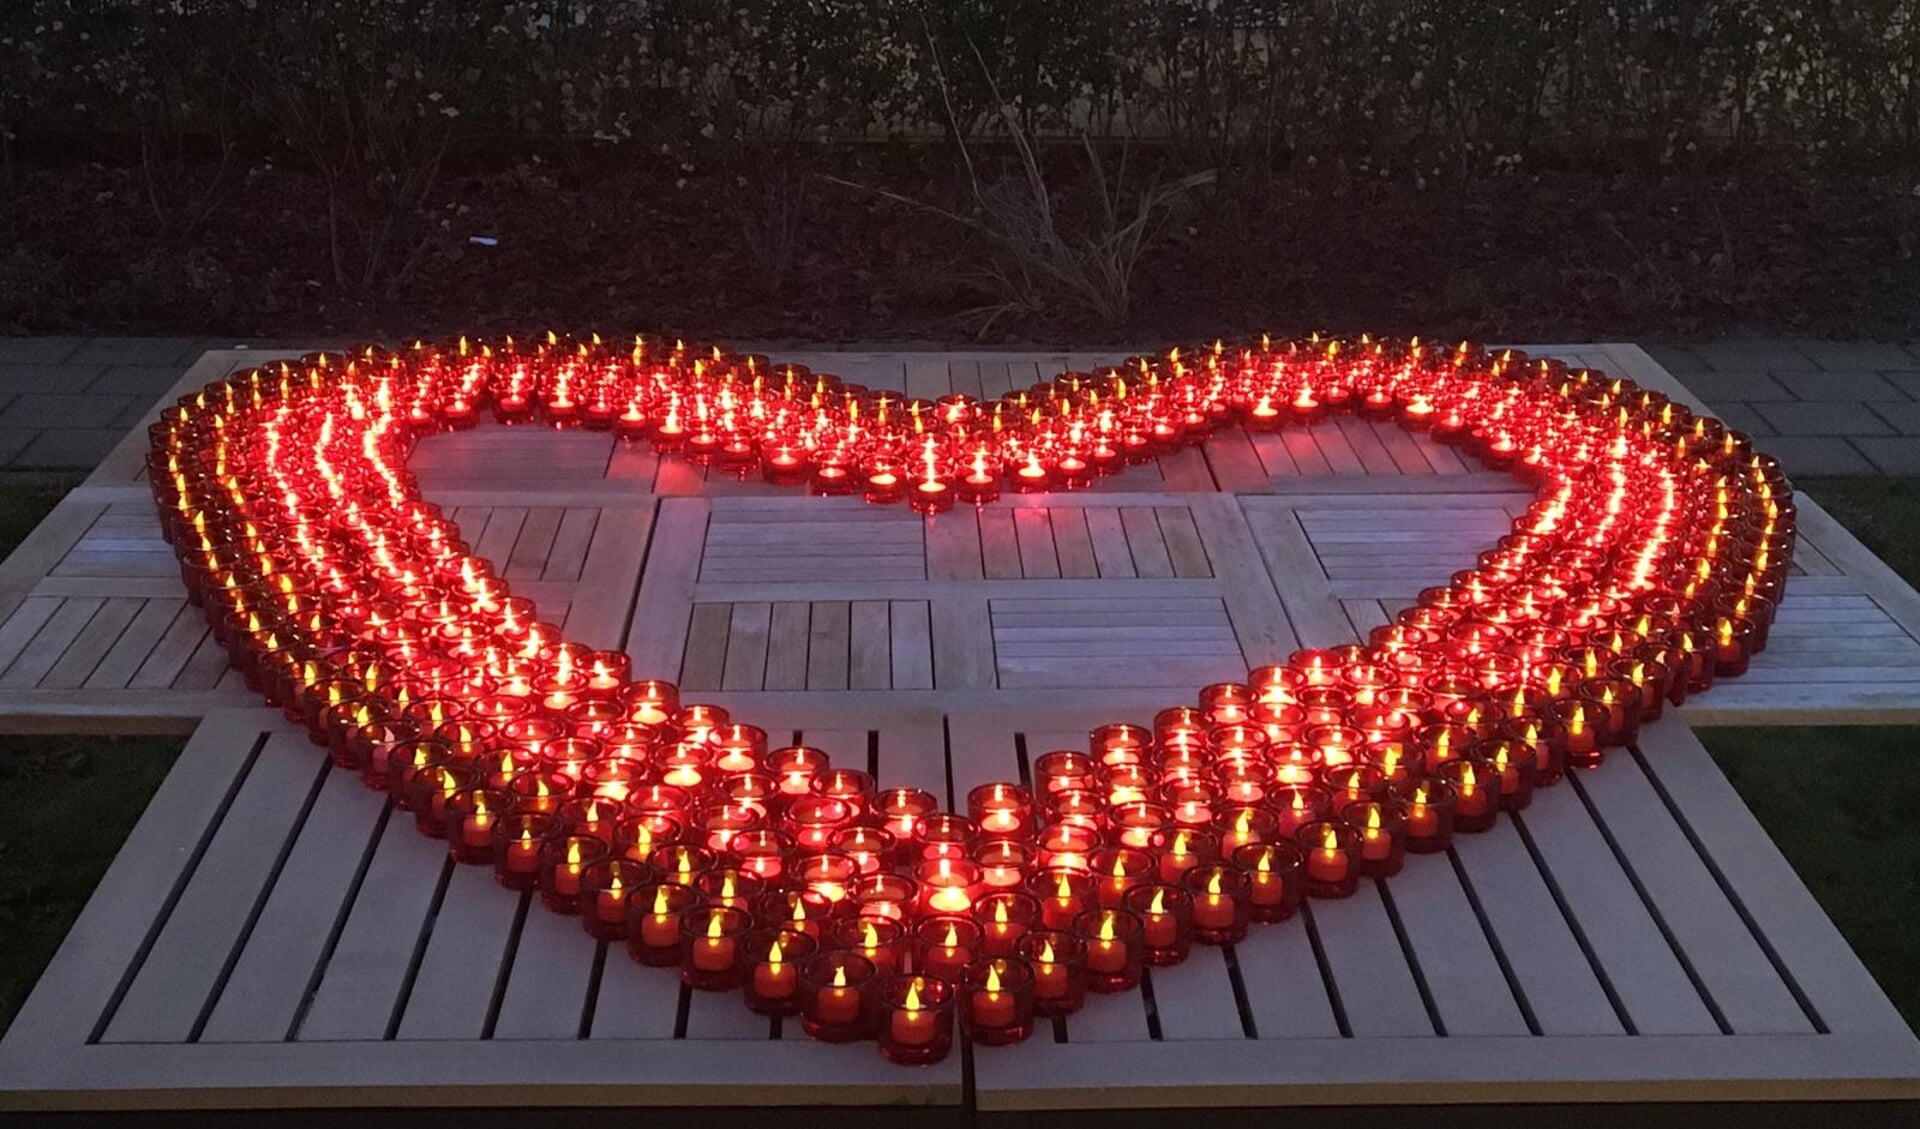 Ruim 400 lichtjes vormden een hart in de binnentuin van Rustoord.